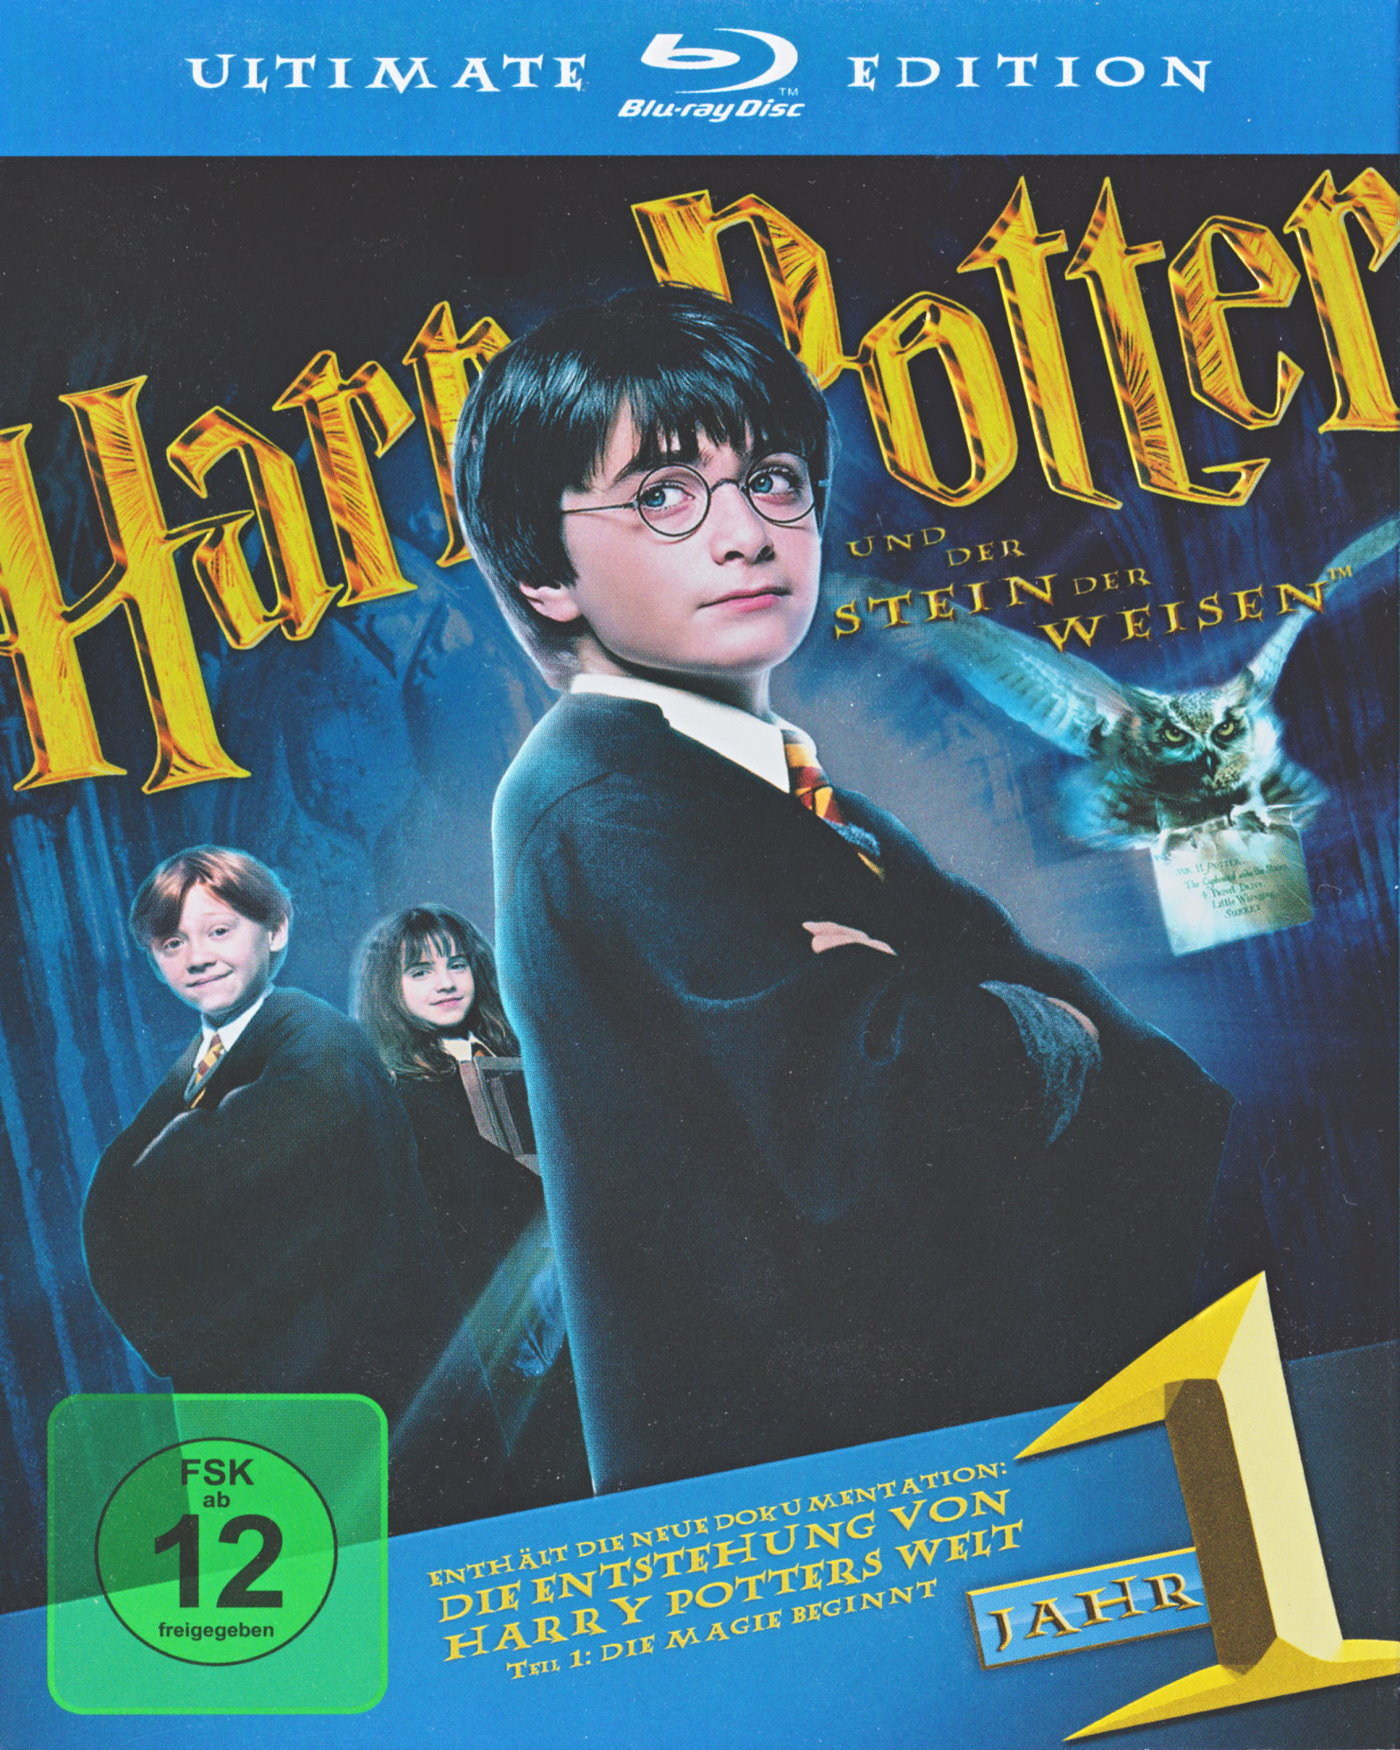 Cover - Harry Potter und der Stein der Weisen.jpg